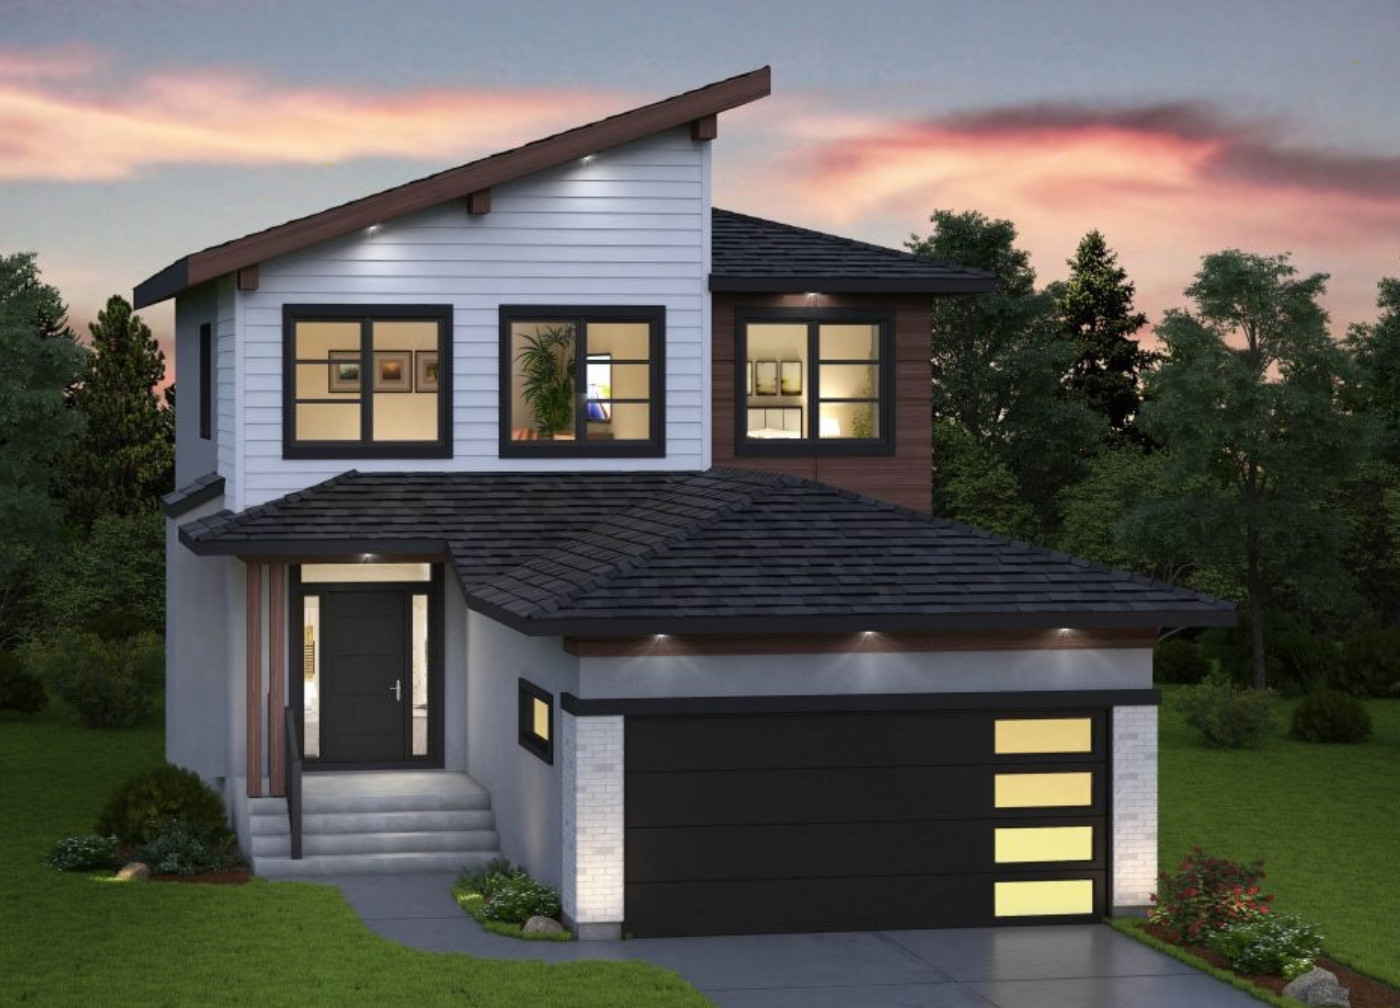 model gambar atap rumah minimalis sederhana terlihat mewah